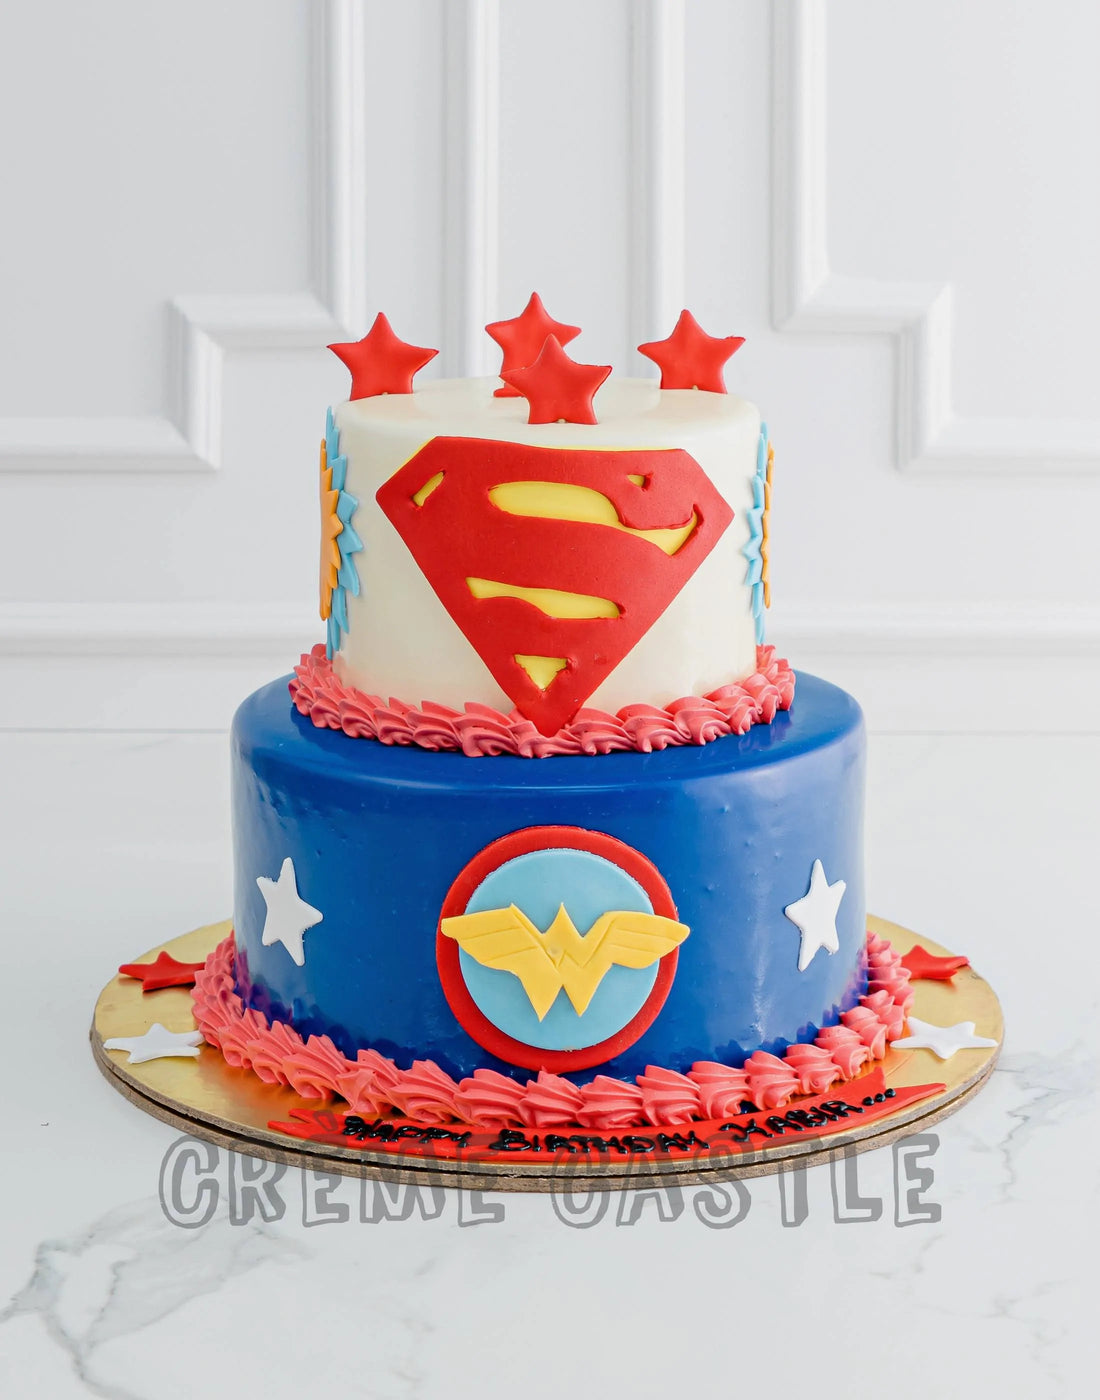 Superman Theme Cake. Wonder Woman Cake by Creme Castle